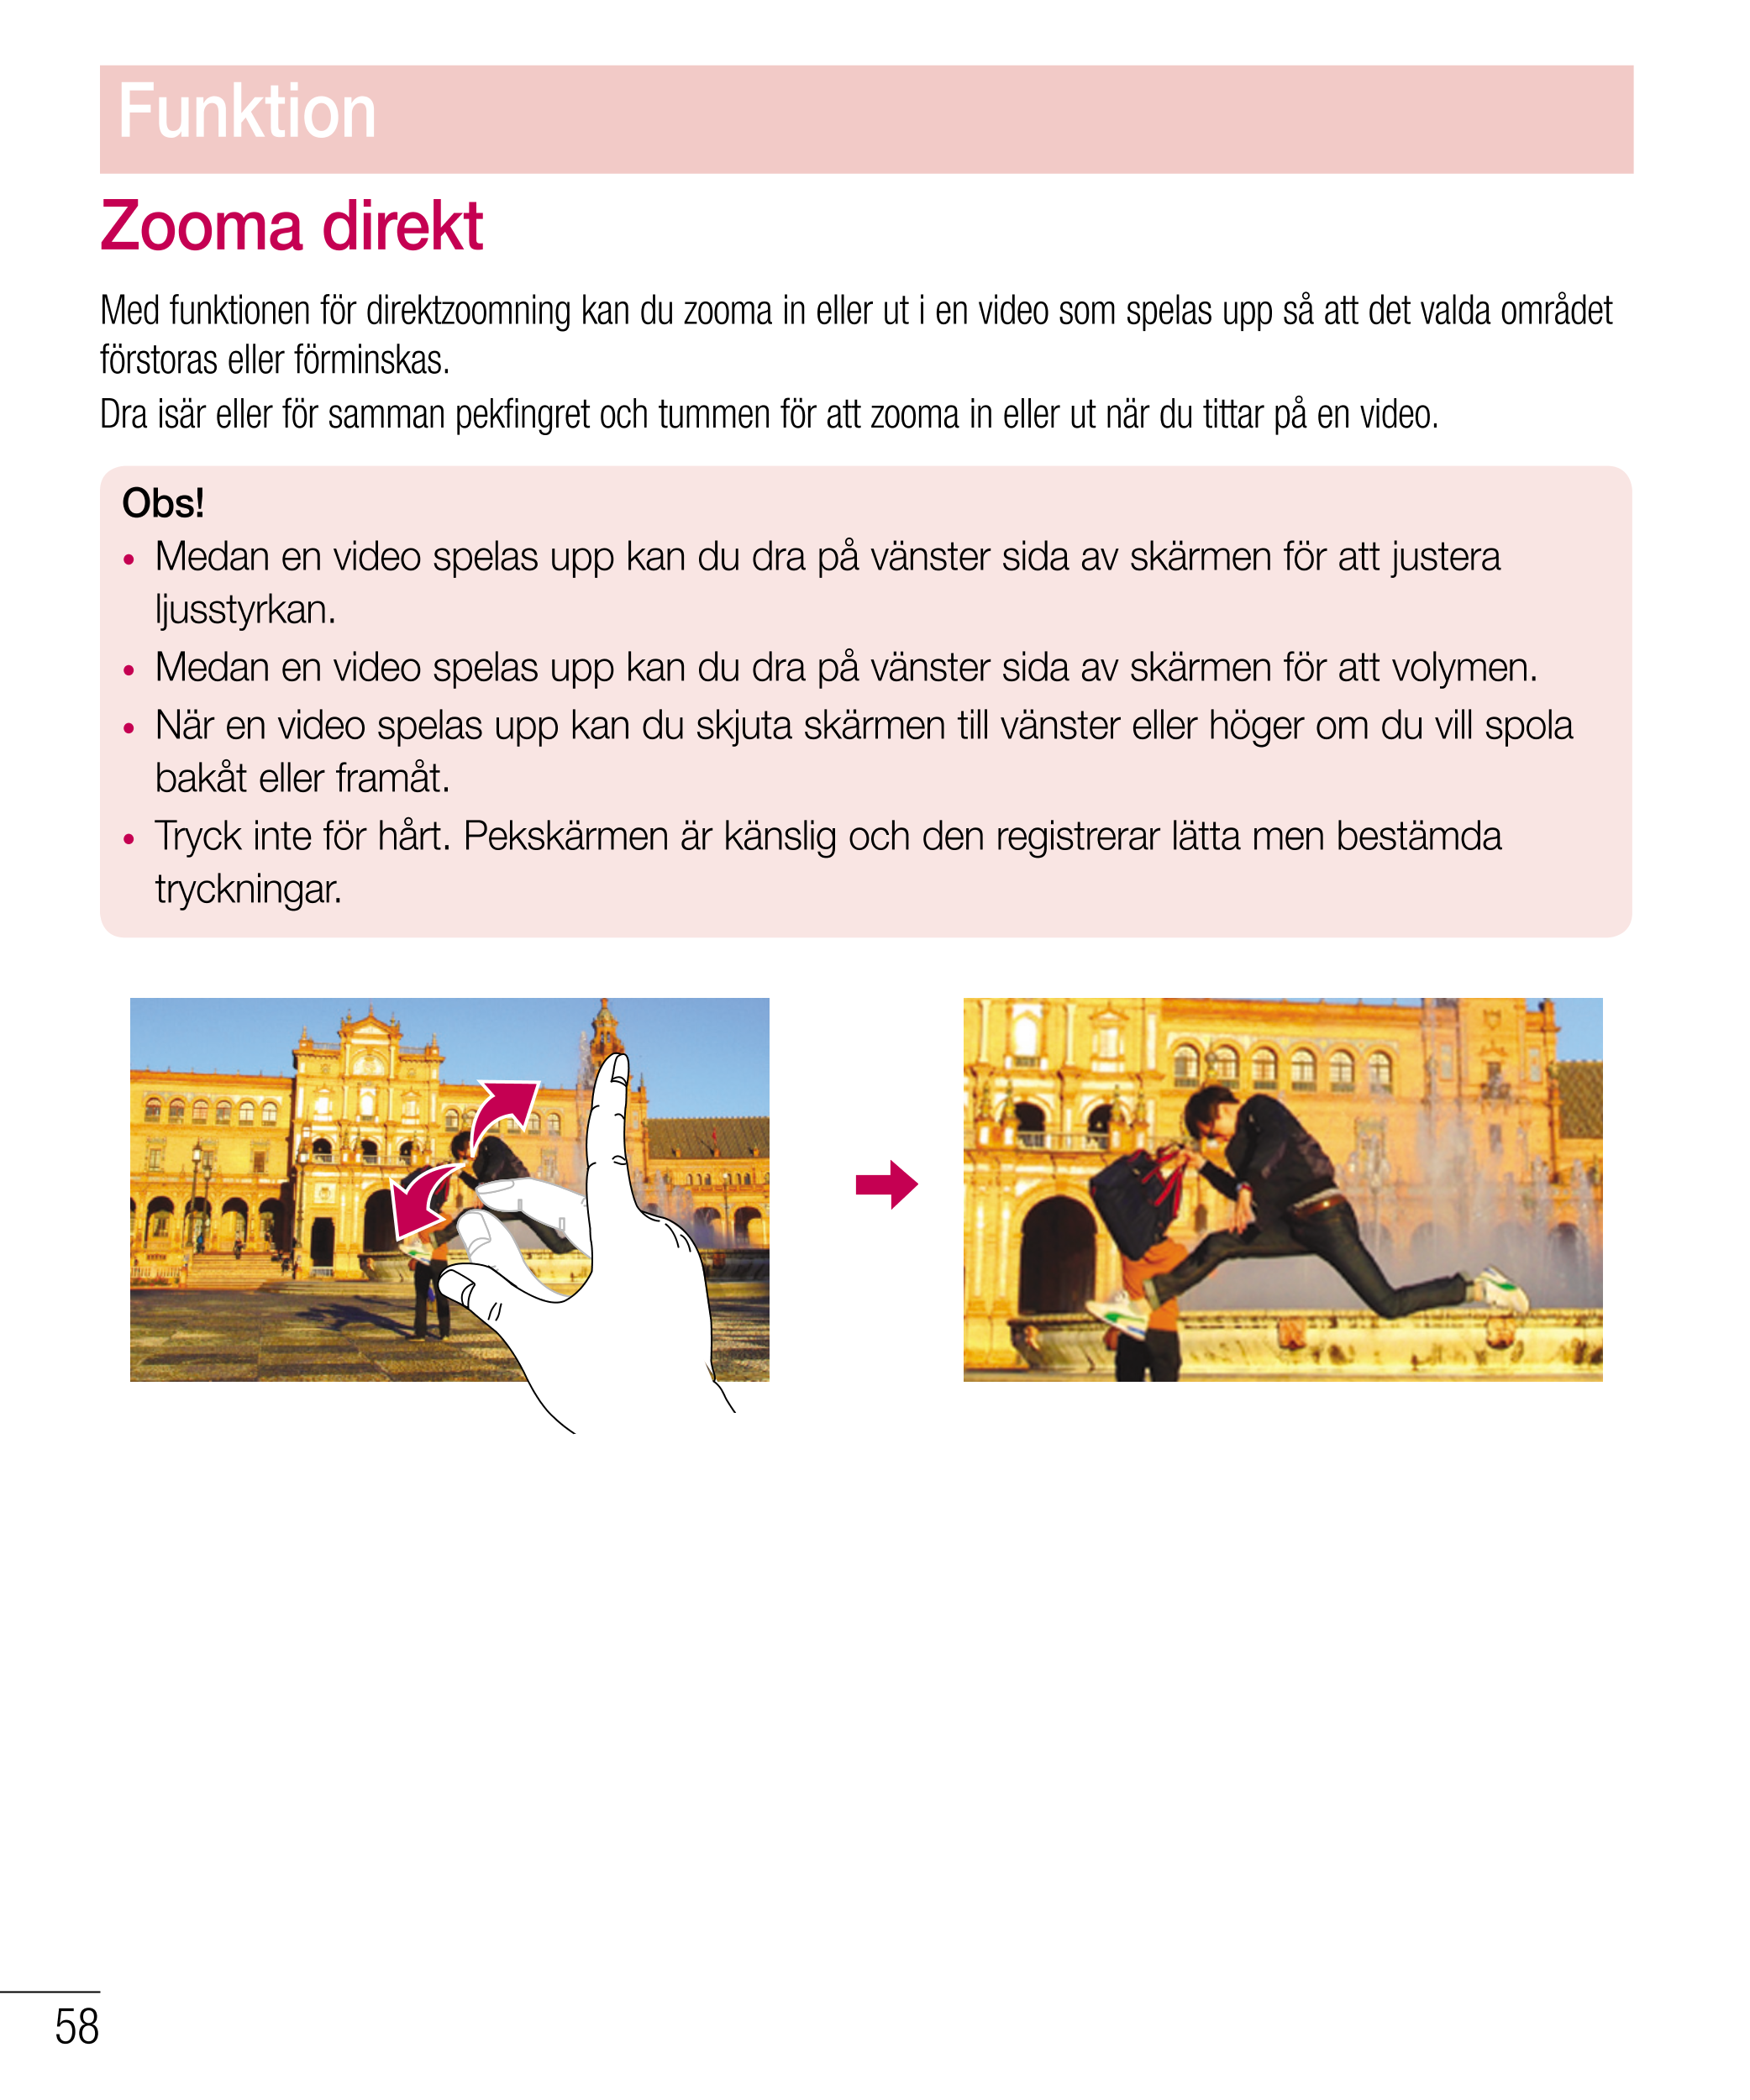 Funktion
Zooma direkt
Med funktionen för direktzoomning kan du zooma in eller ut i en video som spelas upp så att det valda områ